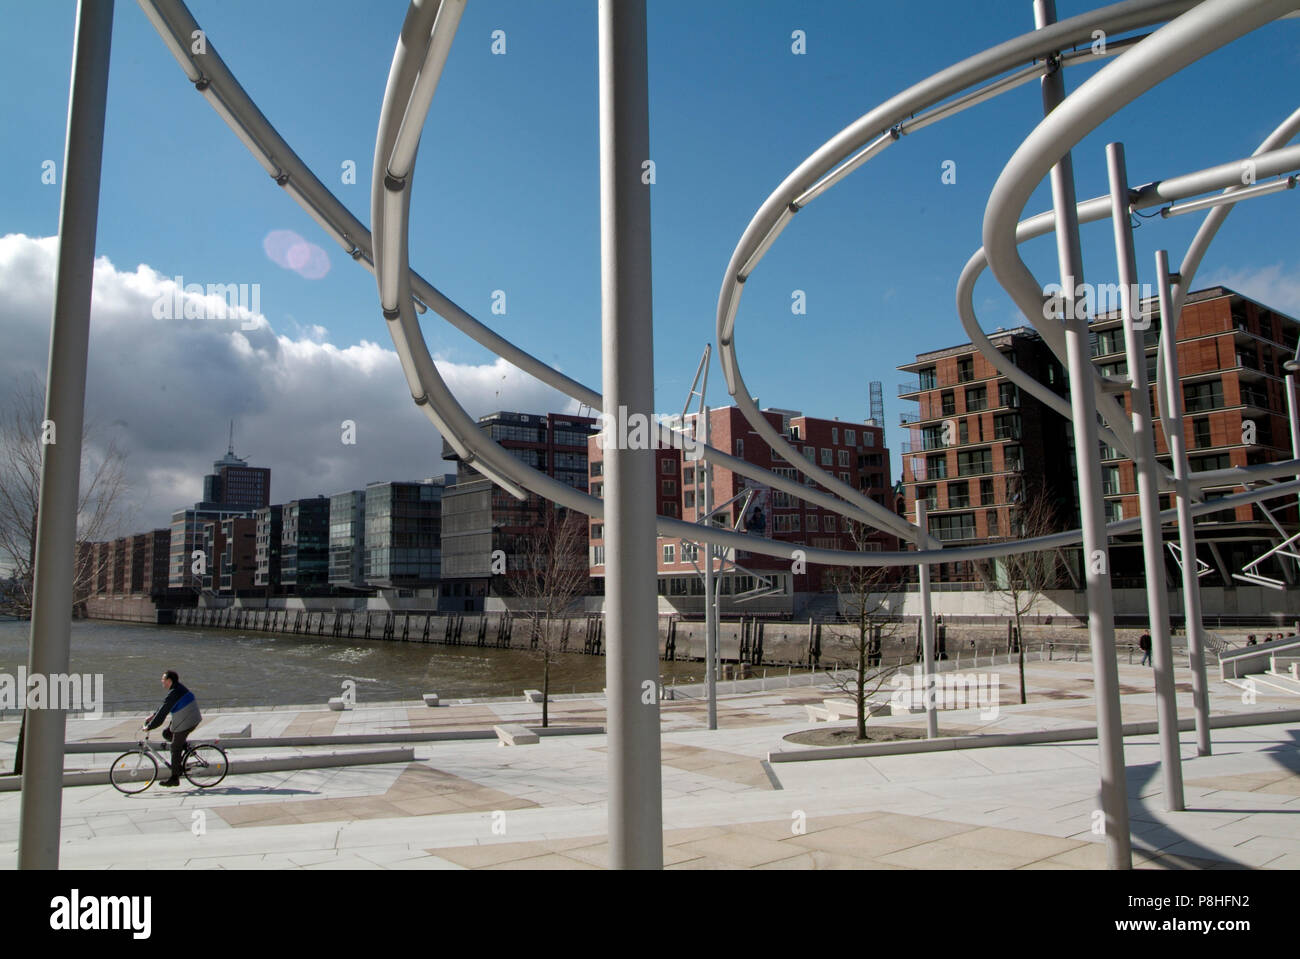 Hamburg Hafen-City, Grossbaustelle im Hamburger Hafen. Vasco da Gama-Platz mit moderner Platz-Beleuchtung, moderner Büro-Architektur. Stock Photo